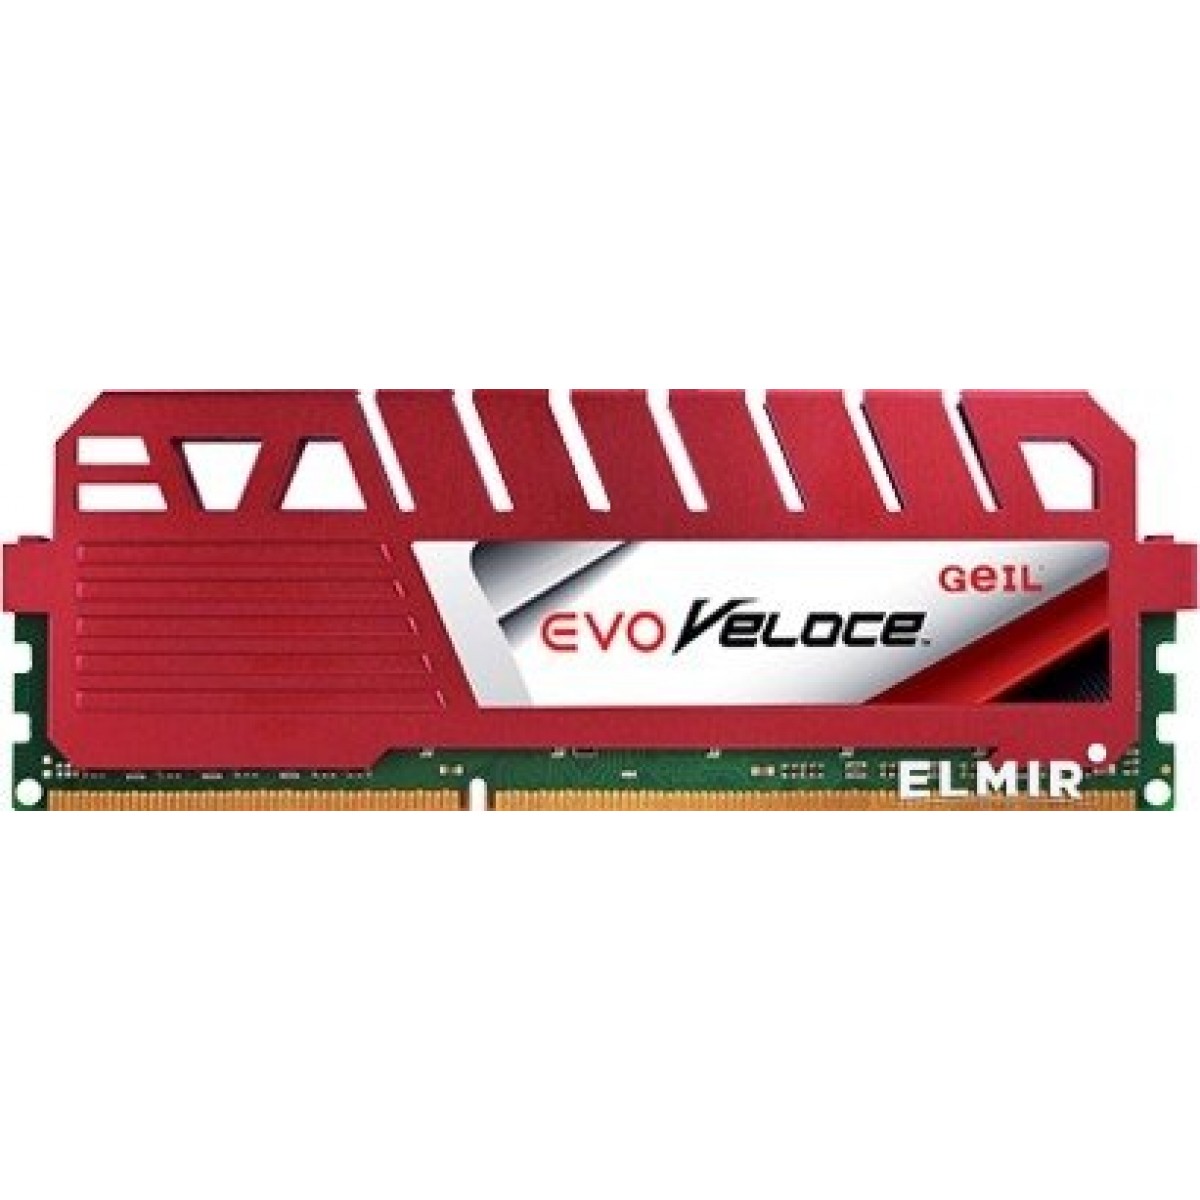 Memória DDR3 Geil Evo Veloce 4GB, 1600MHz, Red, GEV34GB1600C11SC